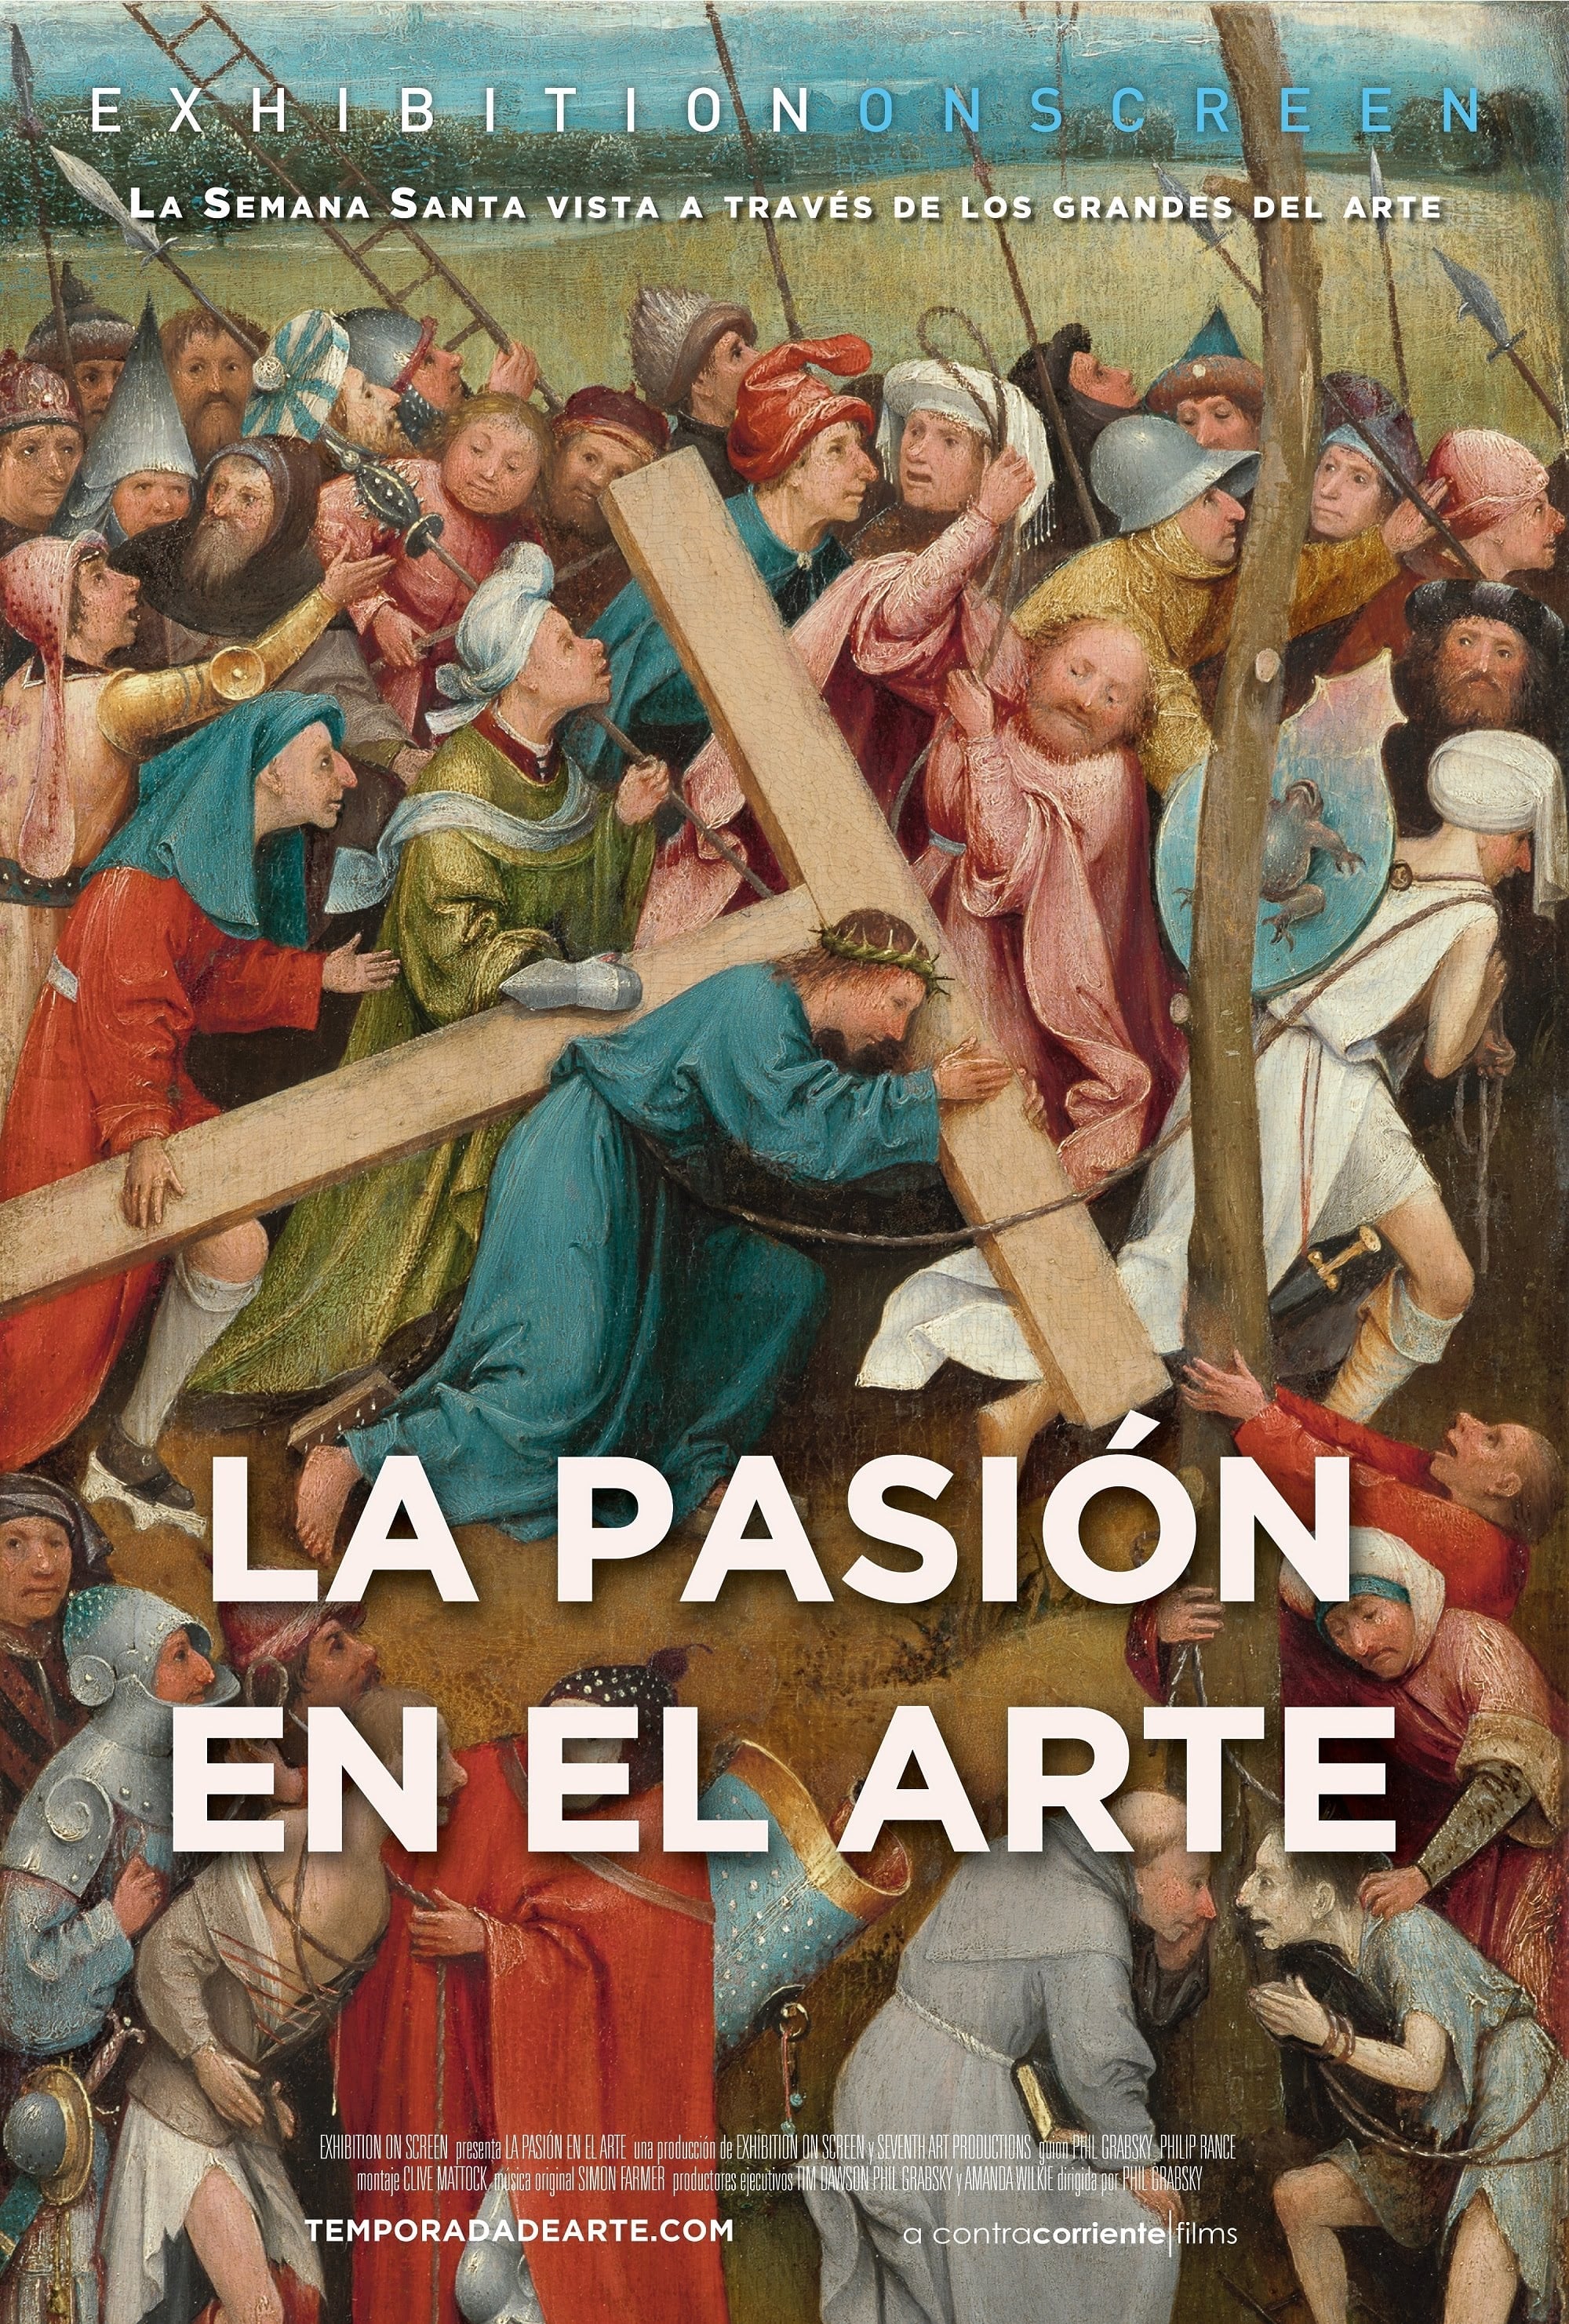 Caratula de Easter in Art (La pasión en el arte) 